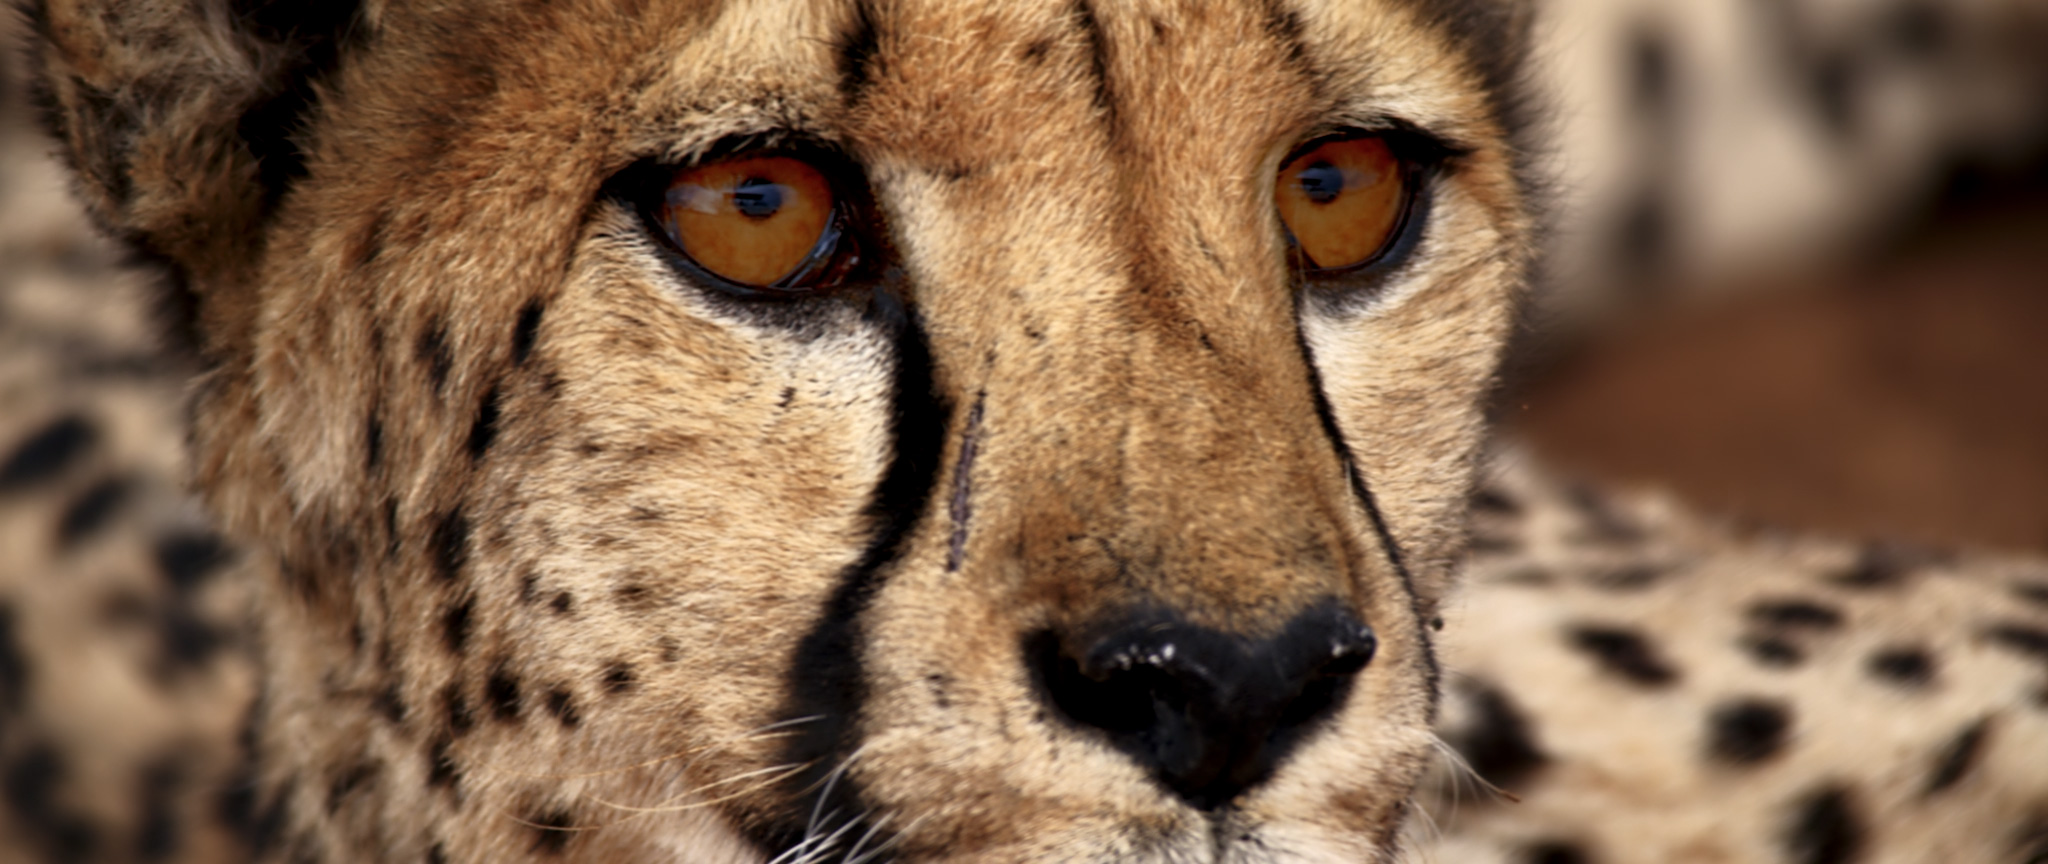 Waterbear | Not A Pet | Cheetah